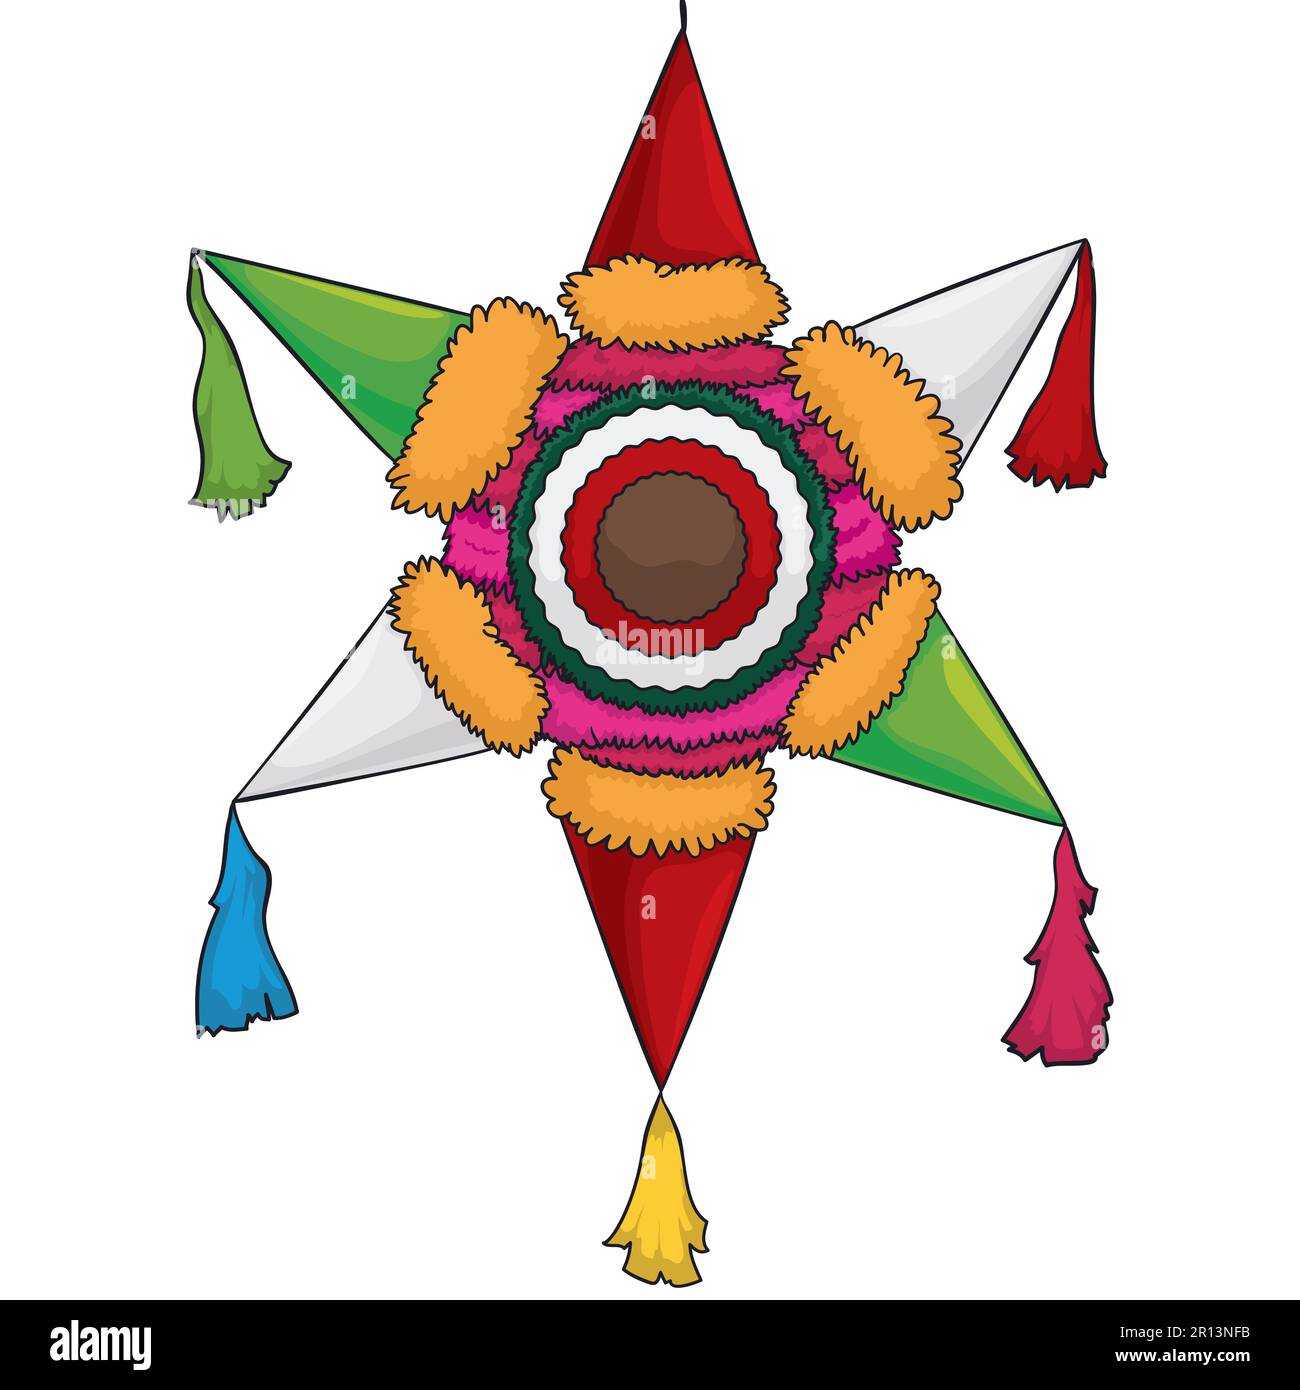 Pinata sospesa a forma di stella tradizionale, realizzata con carte colorate. Design in stile cartone animato. Illustrazione Vettoriale